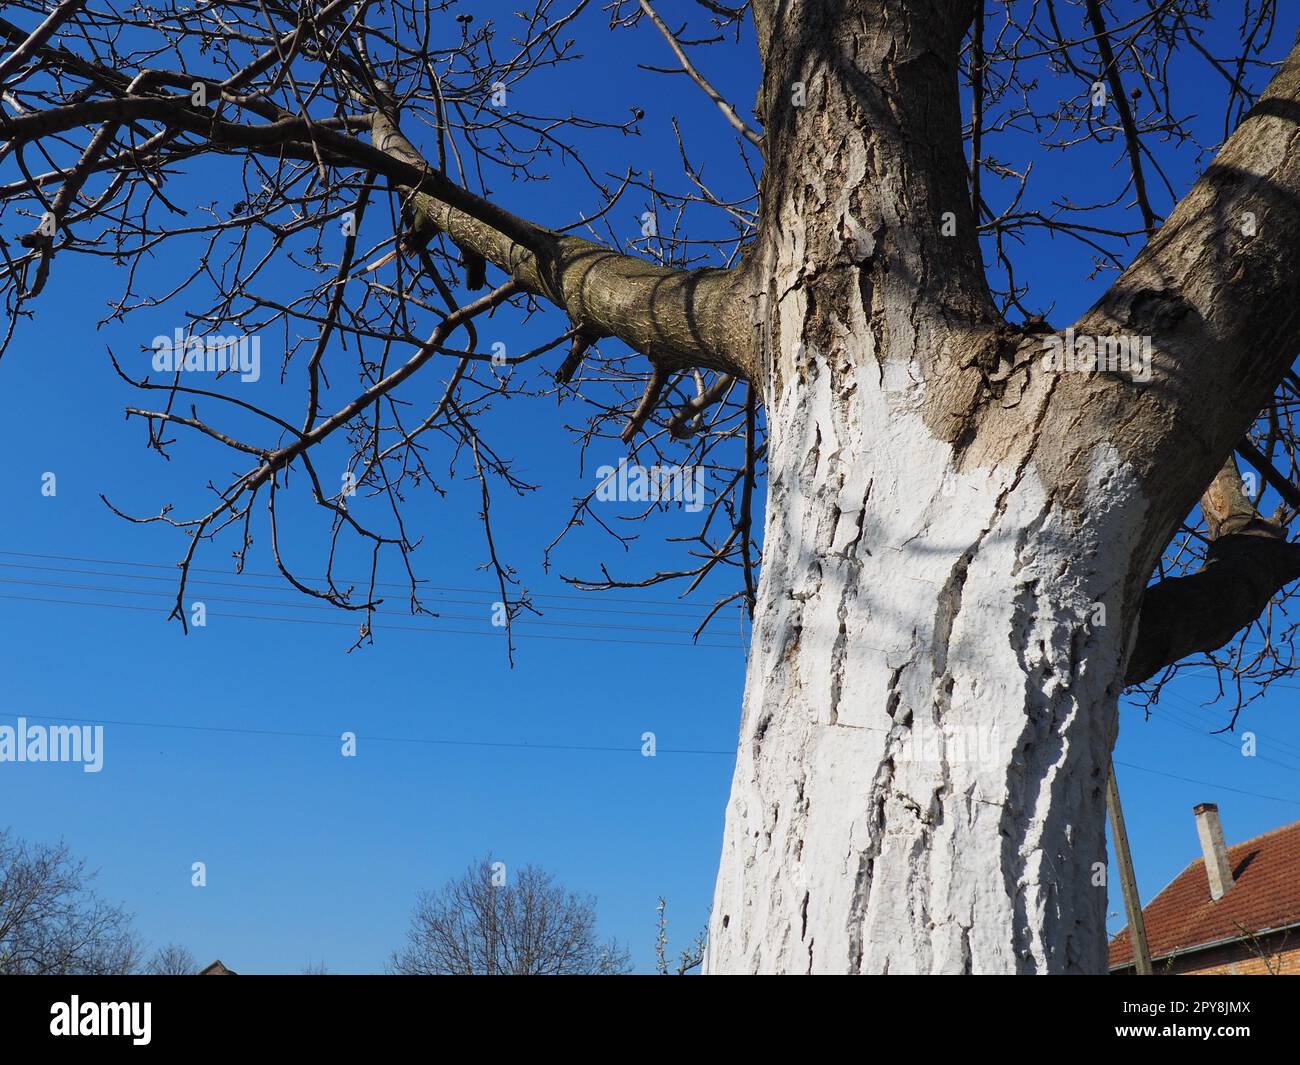 Weißer Stamm eines Obstbaums. Schutz des Baumes vor Insekten - Schädlinge. Walnussbaum ohne Blätter. Landwirtschaftliche und gartenbauliche Arbeiten im Frühjahr. Weiße Farbe auf der Rinde. Blauer Himmel Stockfoto